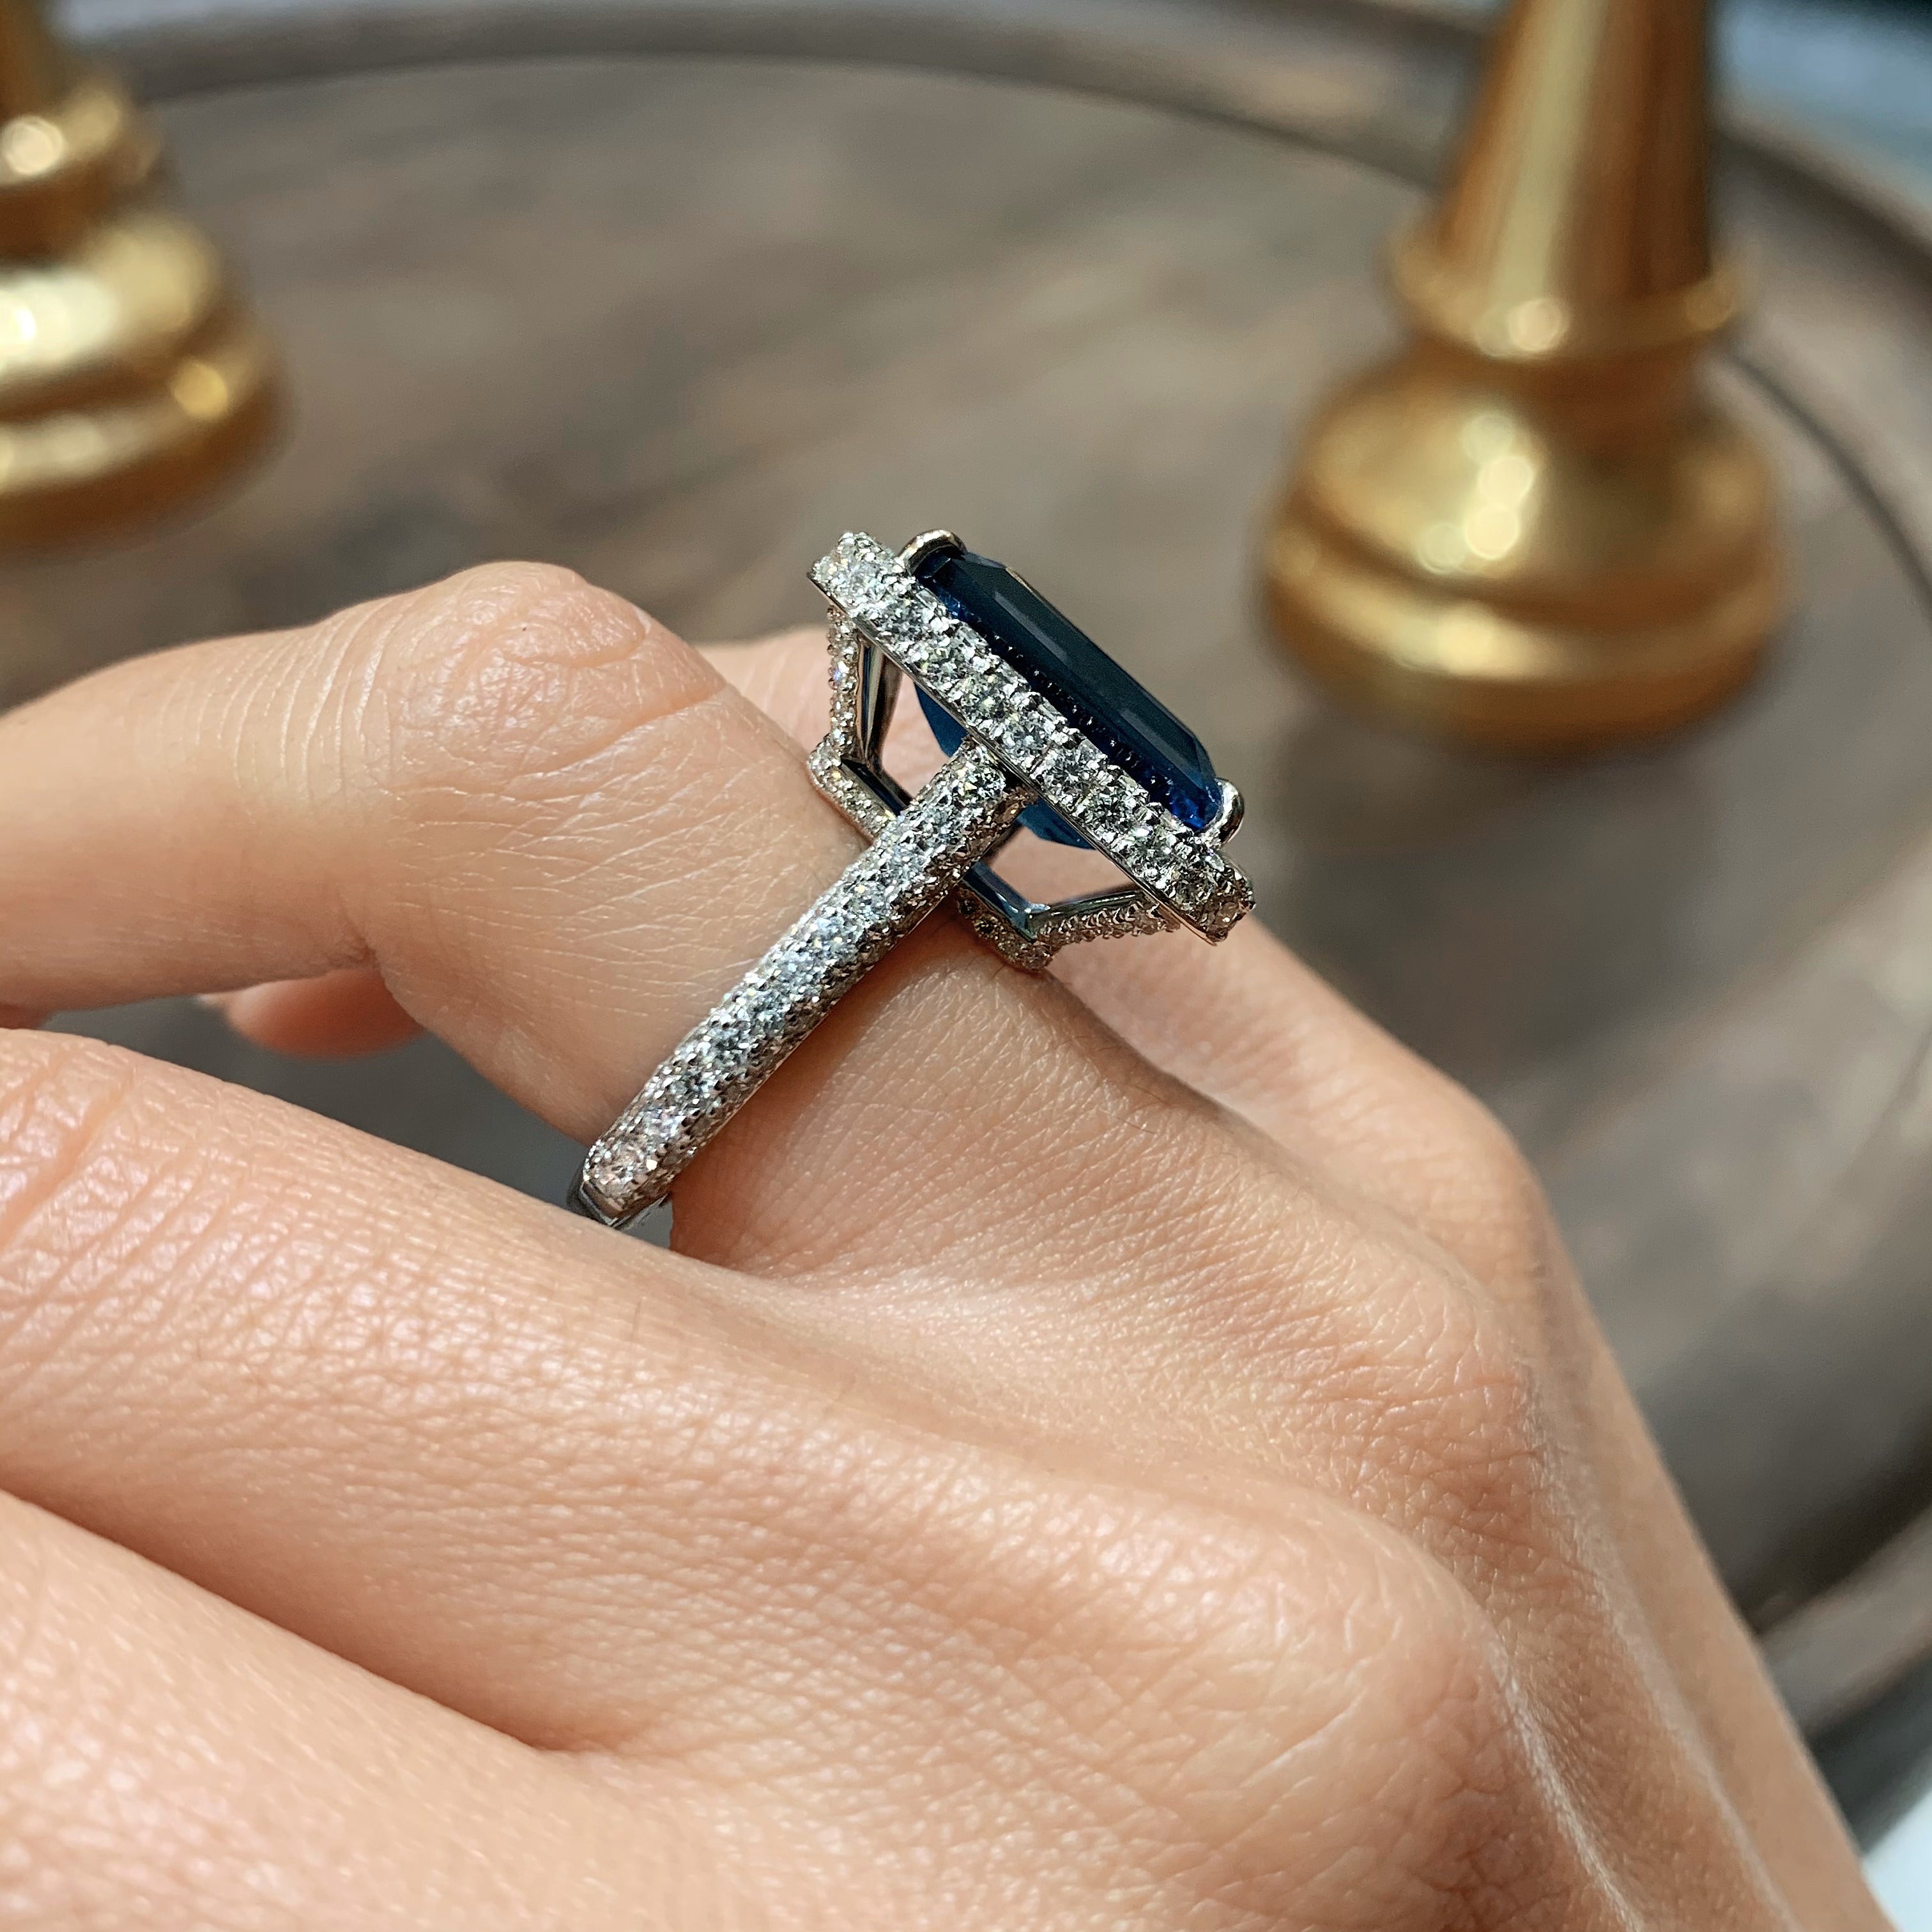 Mackenzie Gemstone & Diamonds Ring   (12 Carat) -14K White Gold